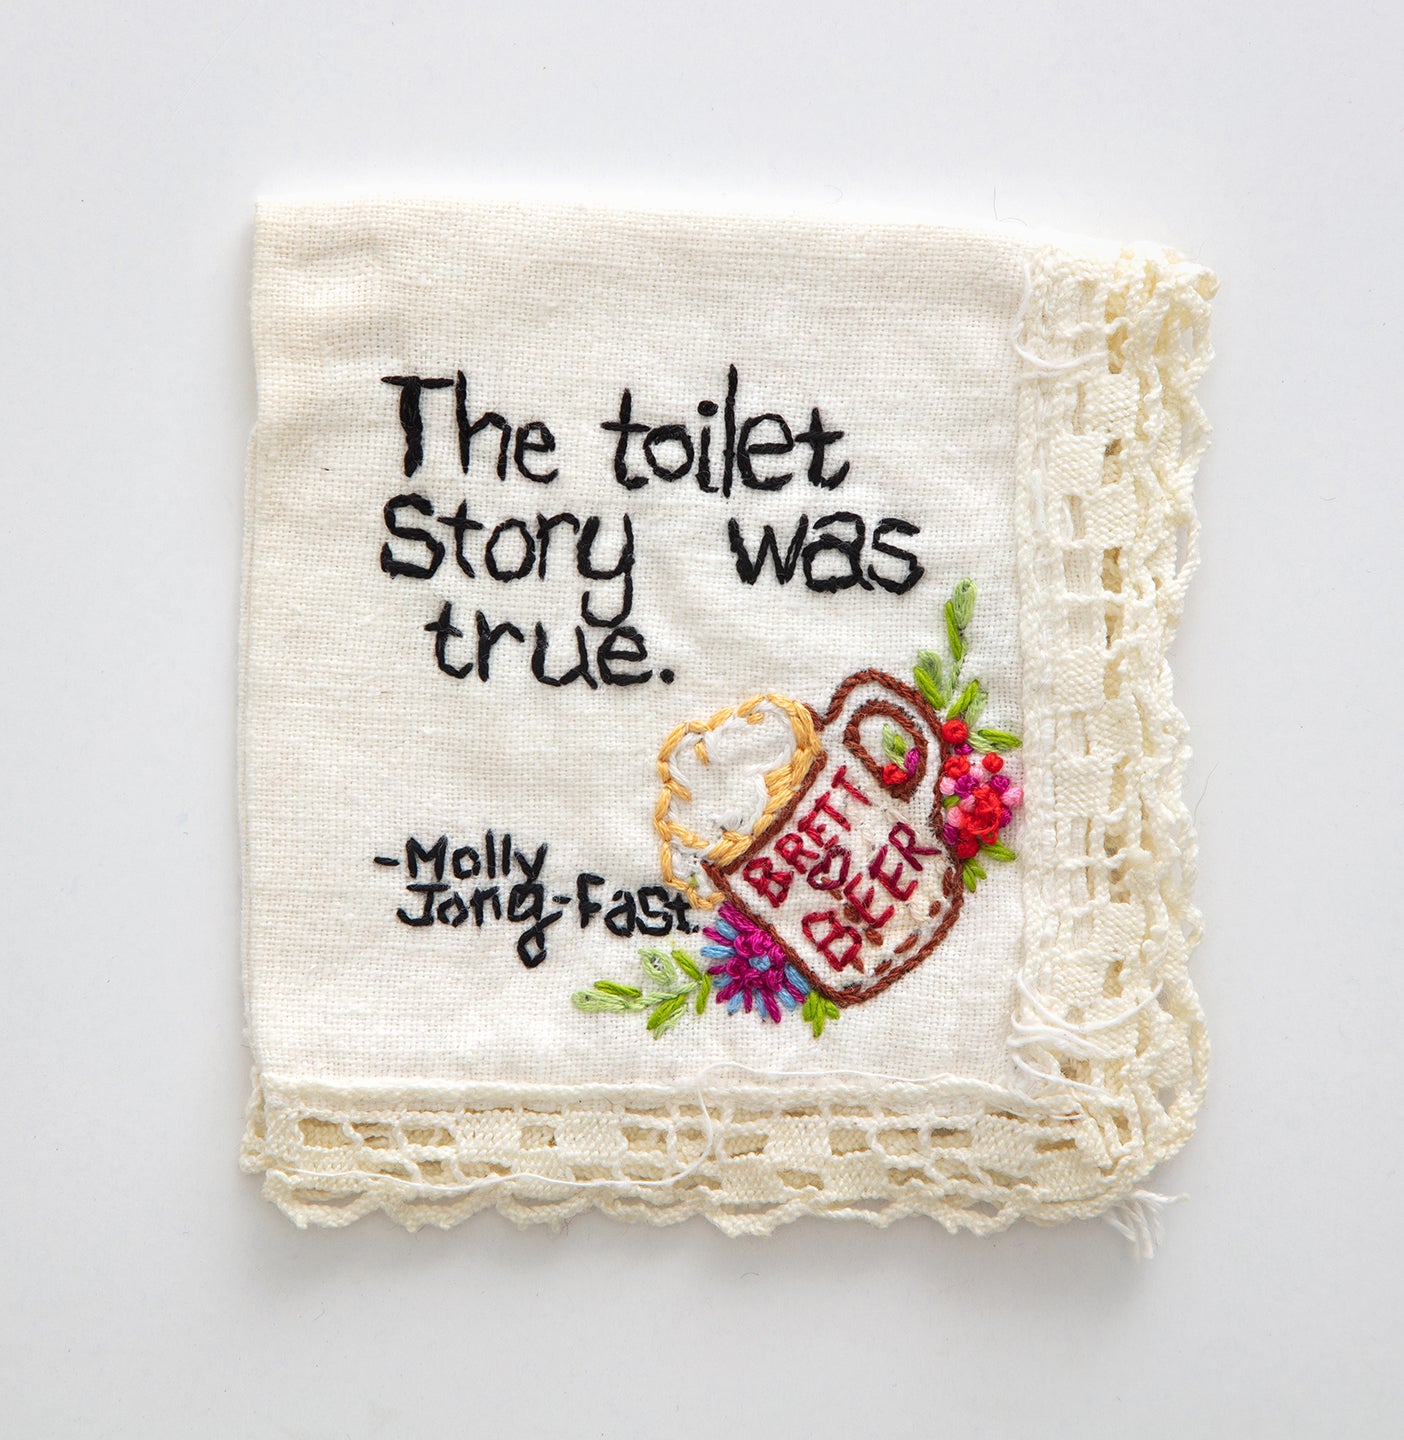 Diana Weymar | The toilet story was true